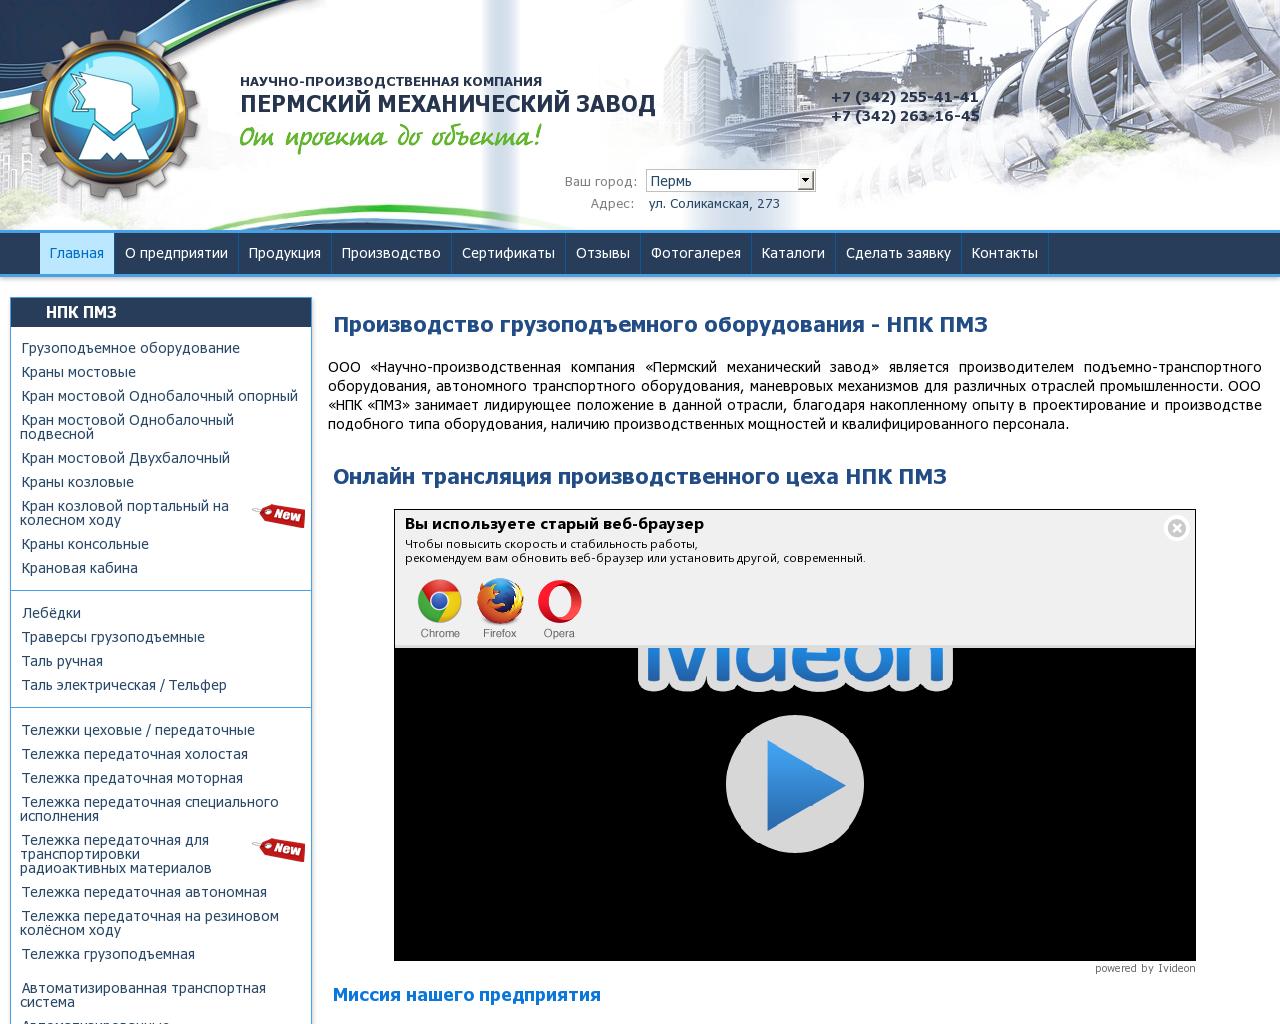 Изображение сайта pzptm.ru в разрешении 1280x1024